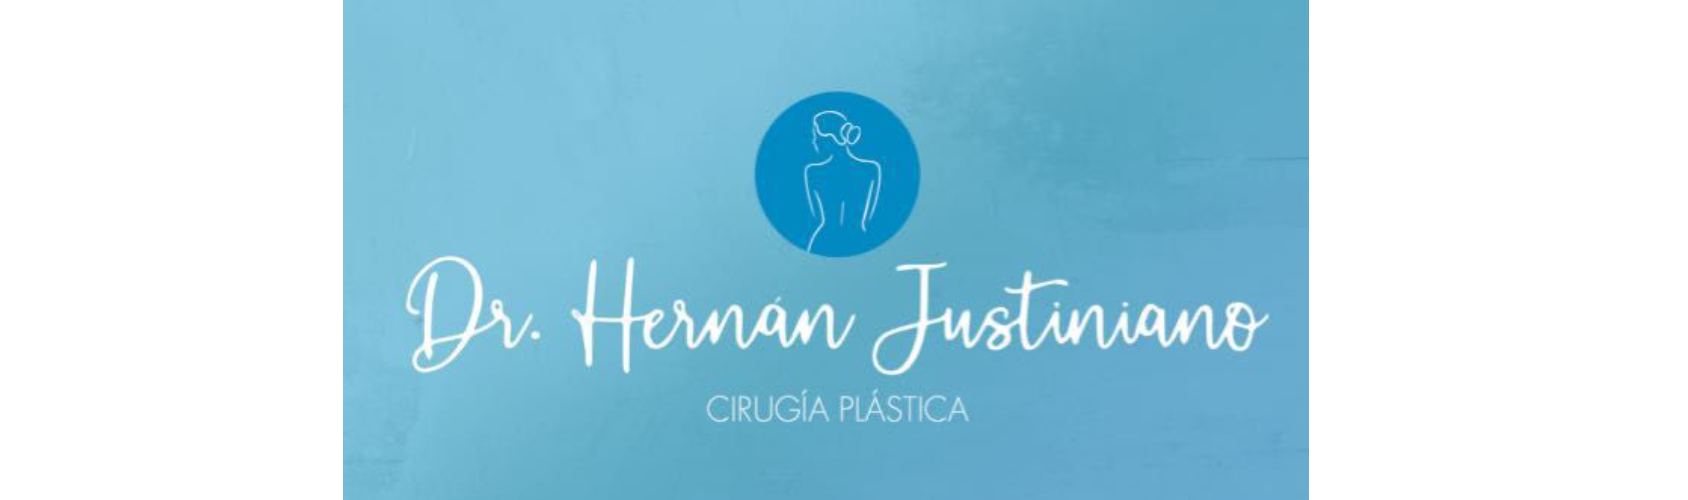 CIRUGÍA PLÁSTICA – Dr. Hernan Justiniano